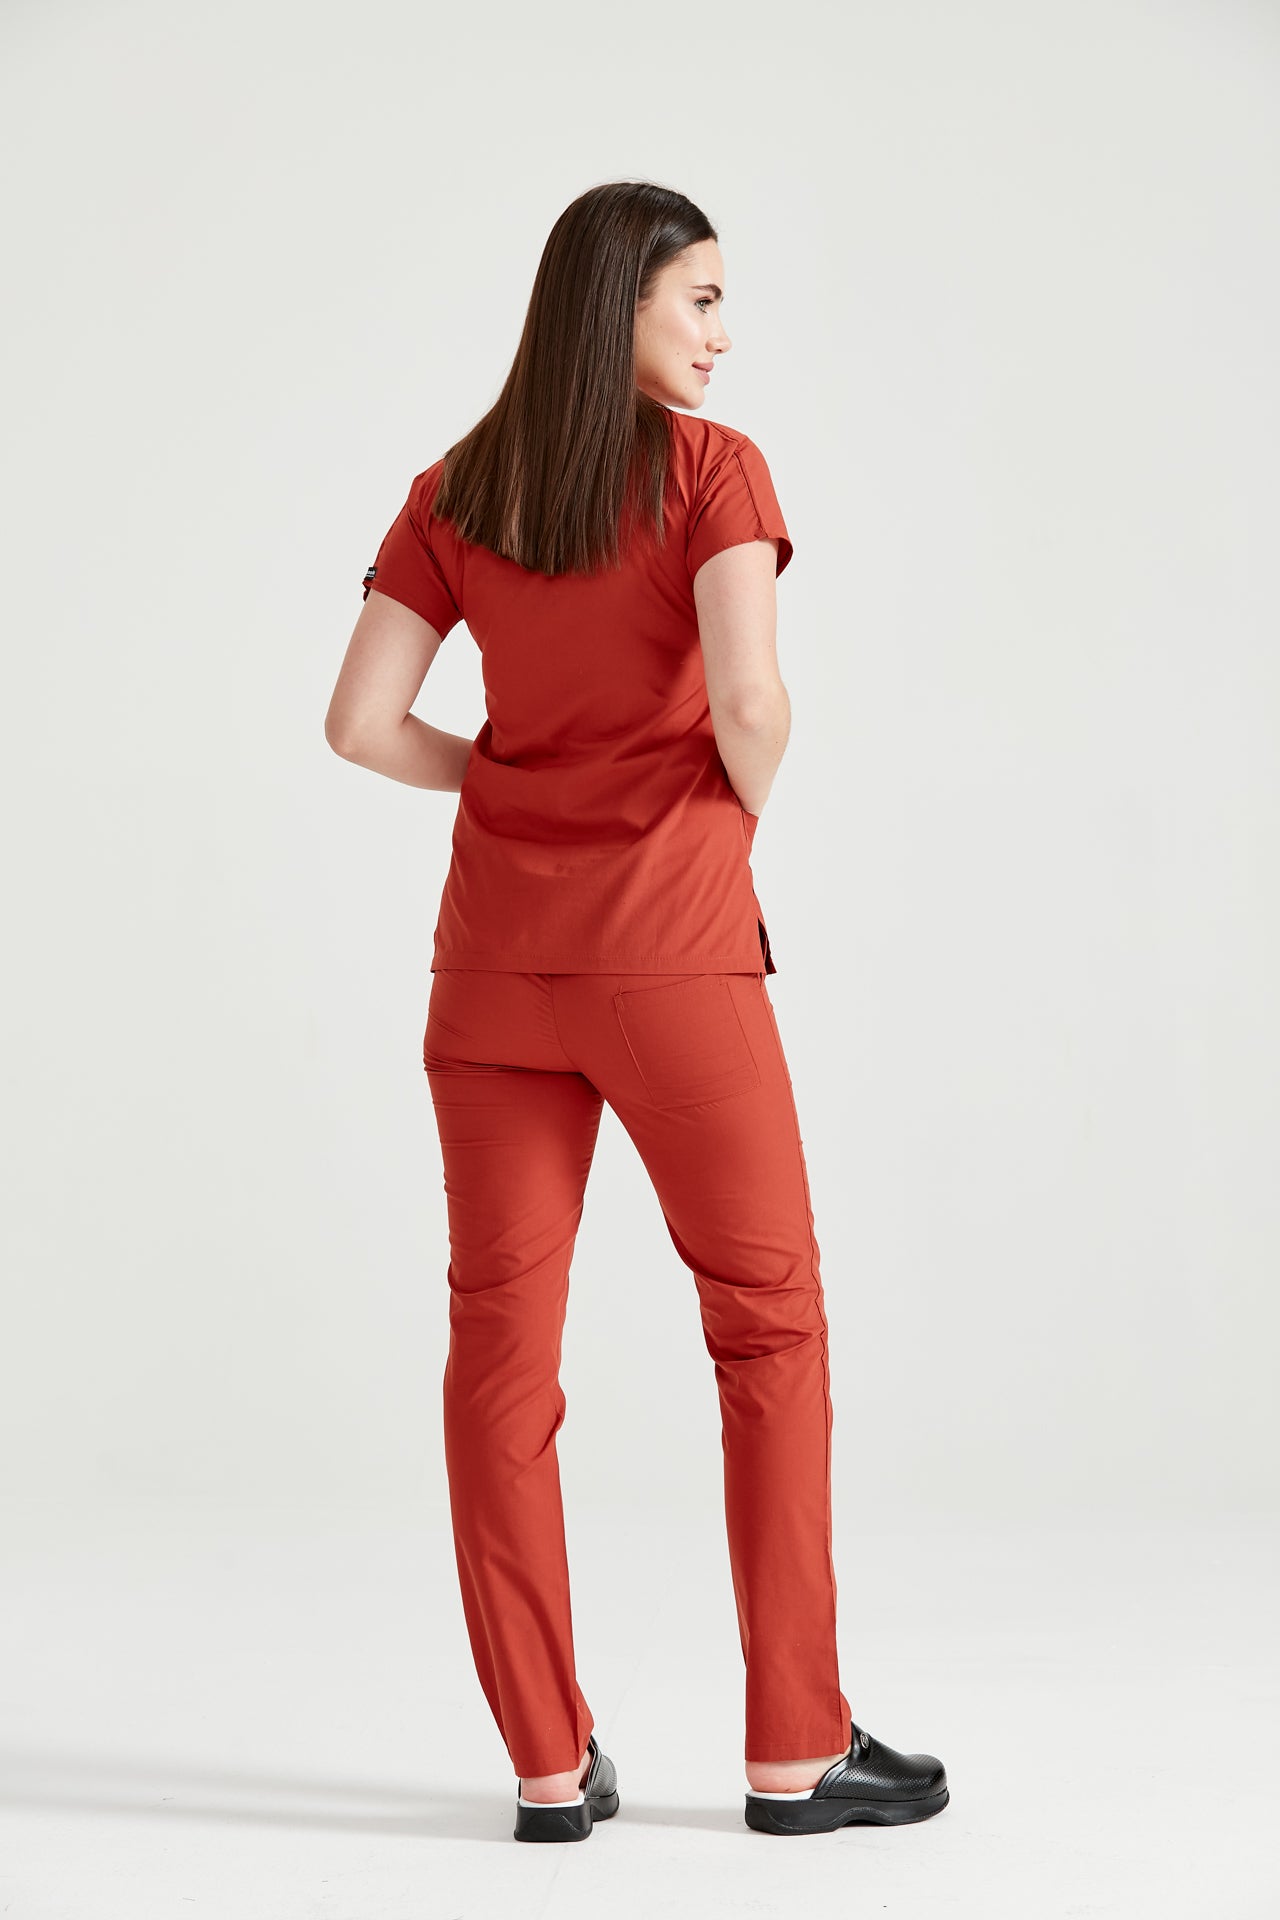 Asistenta medicala imbracata in costum medical rosu Classic Red, vedere din spate